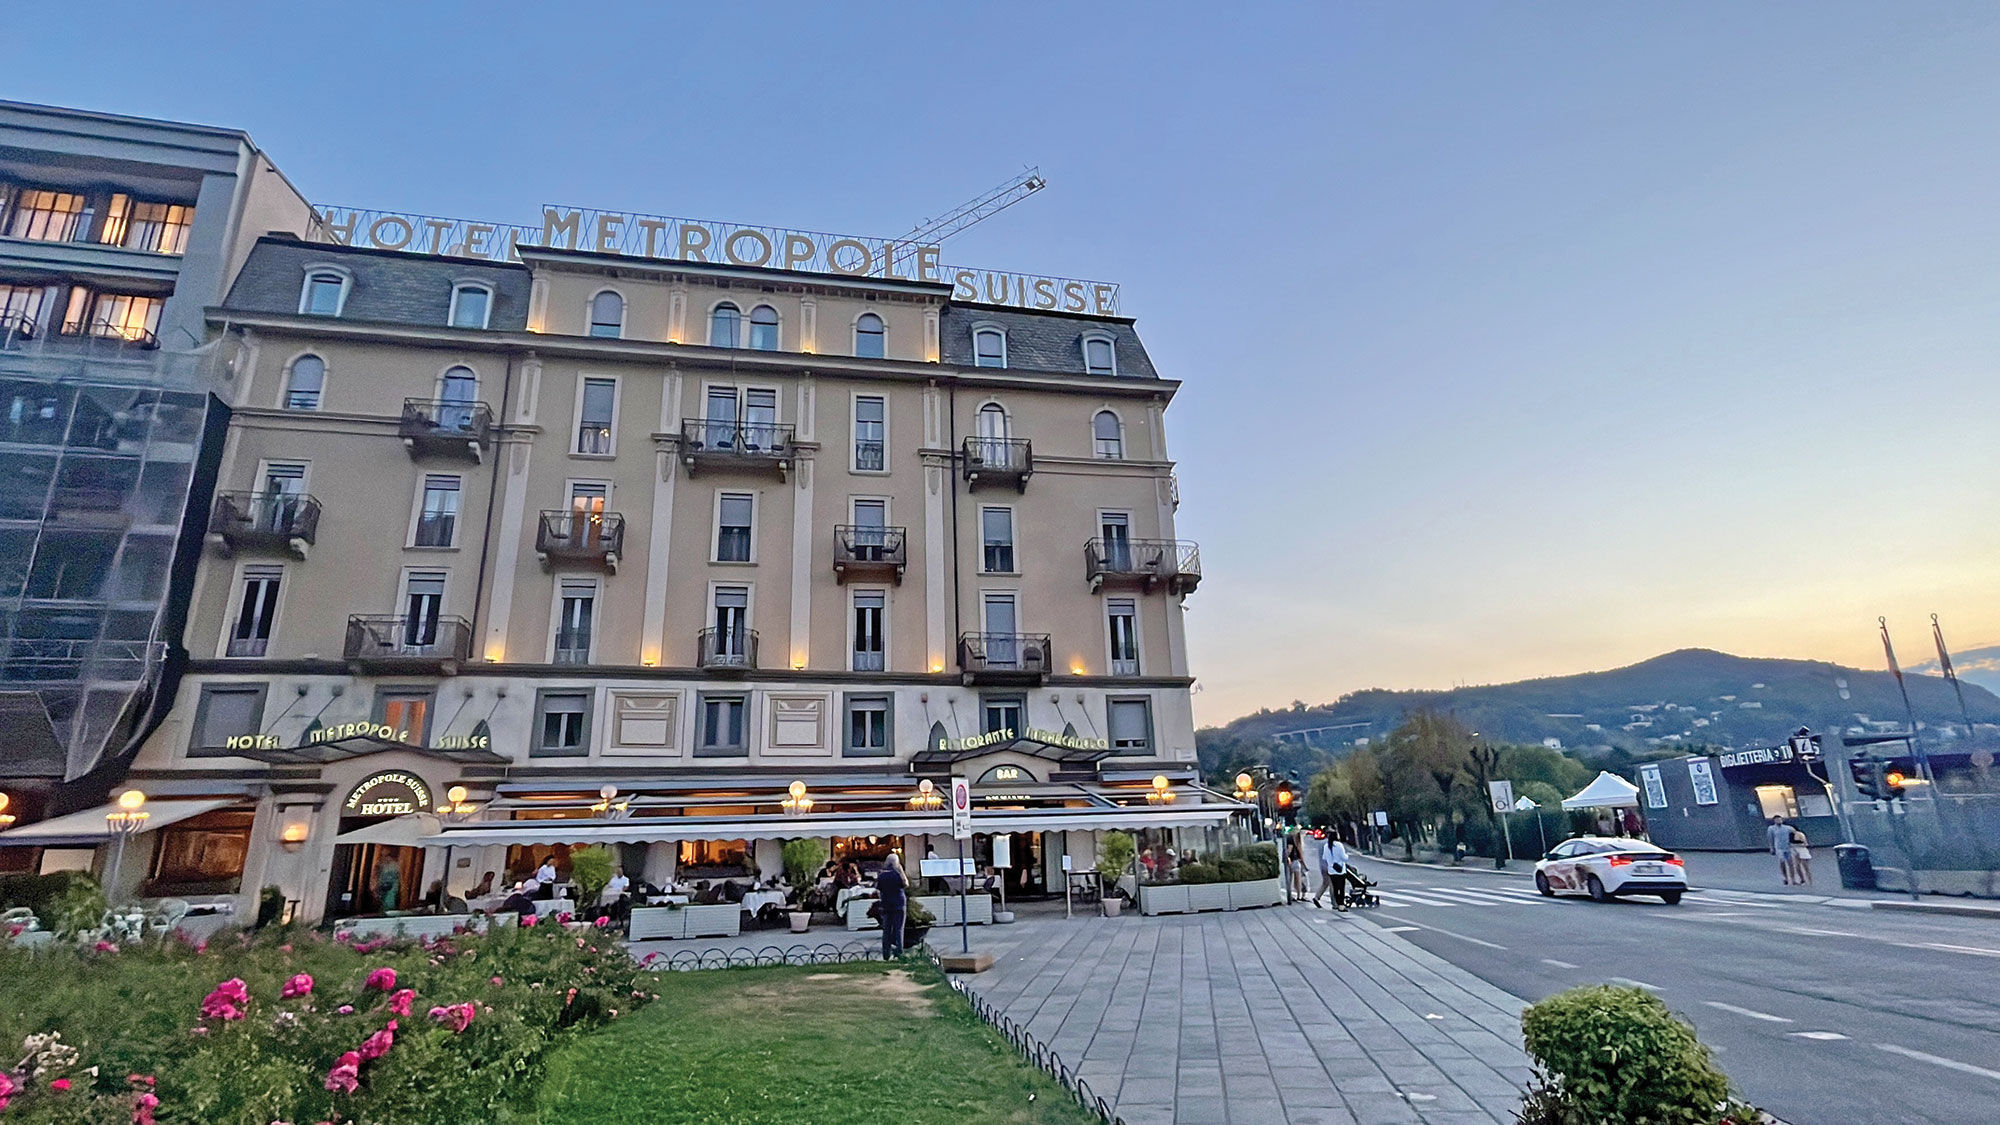 Hotel Metropole Suisse Como in Lake Como, Italy.